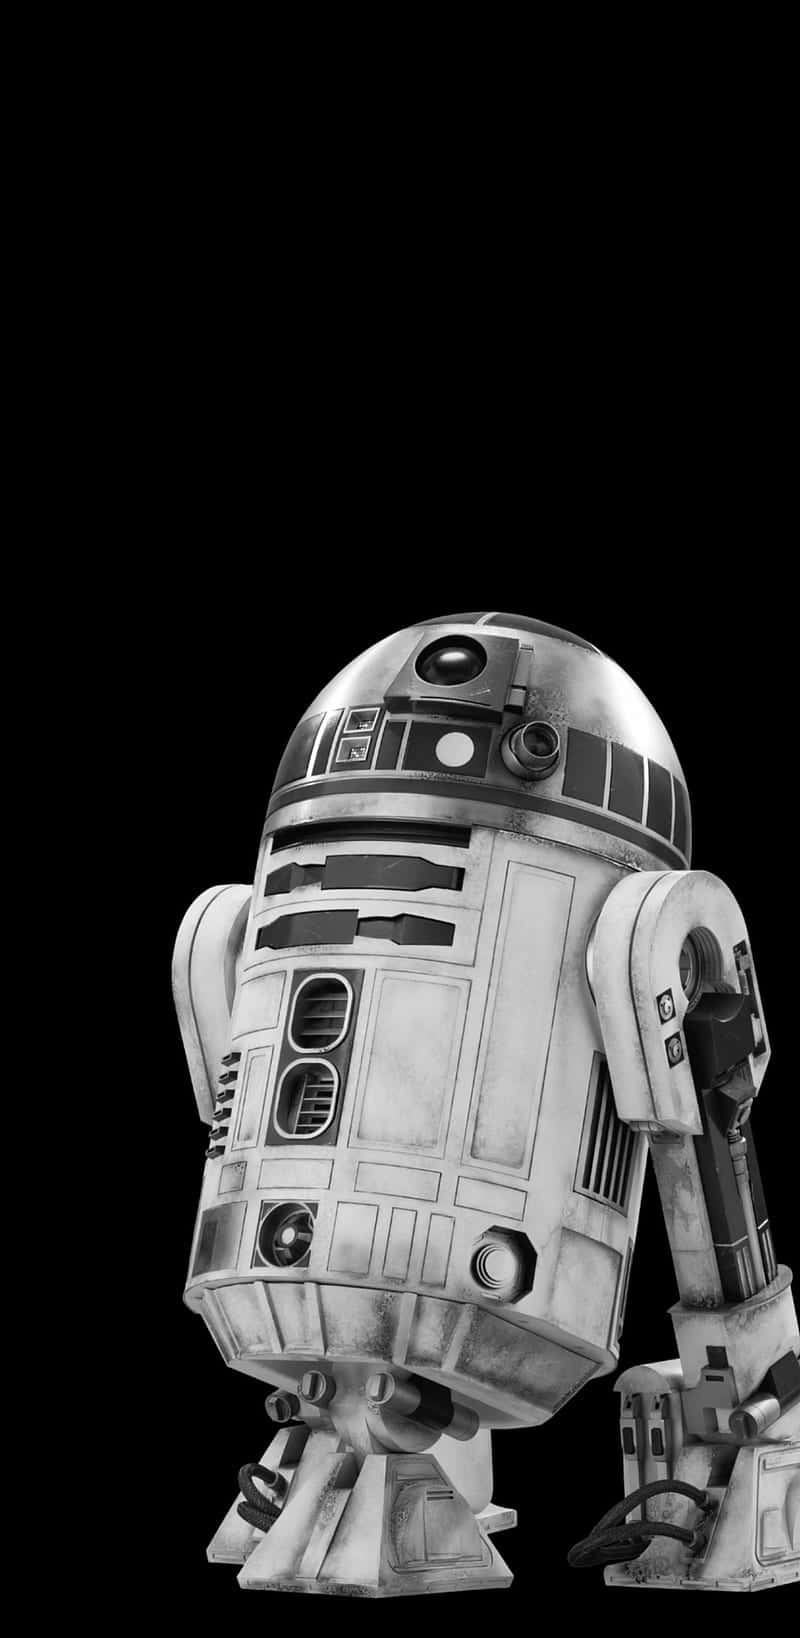 Den Ikoniska Robotkaraktären R2-d2 Från Star Wars Är Ett Populärt Val För Dator- Och Mobilbakgrund. Wallpaper